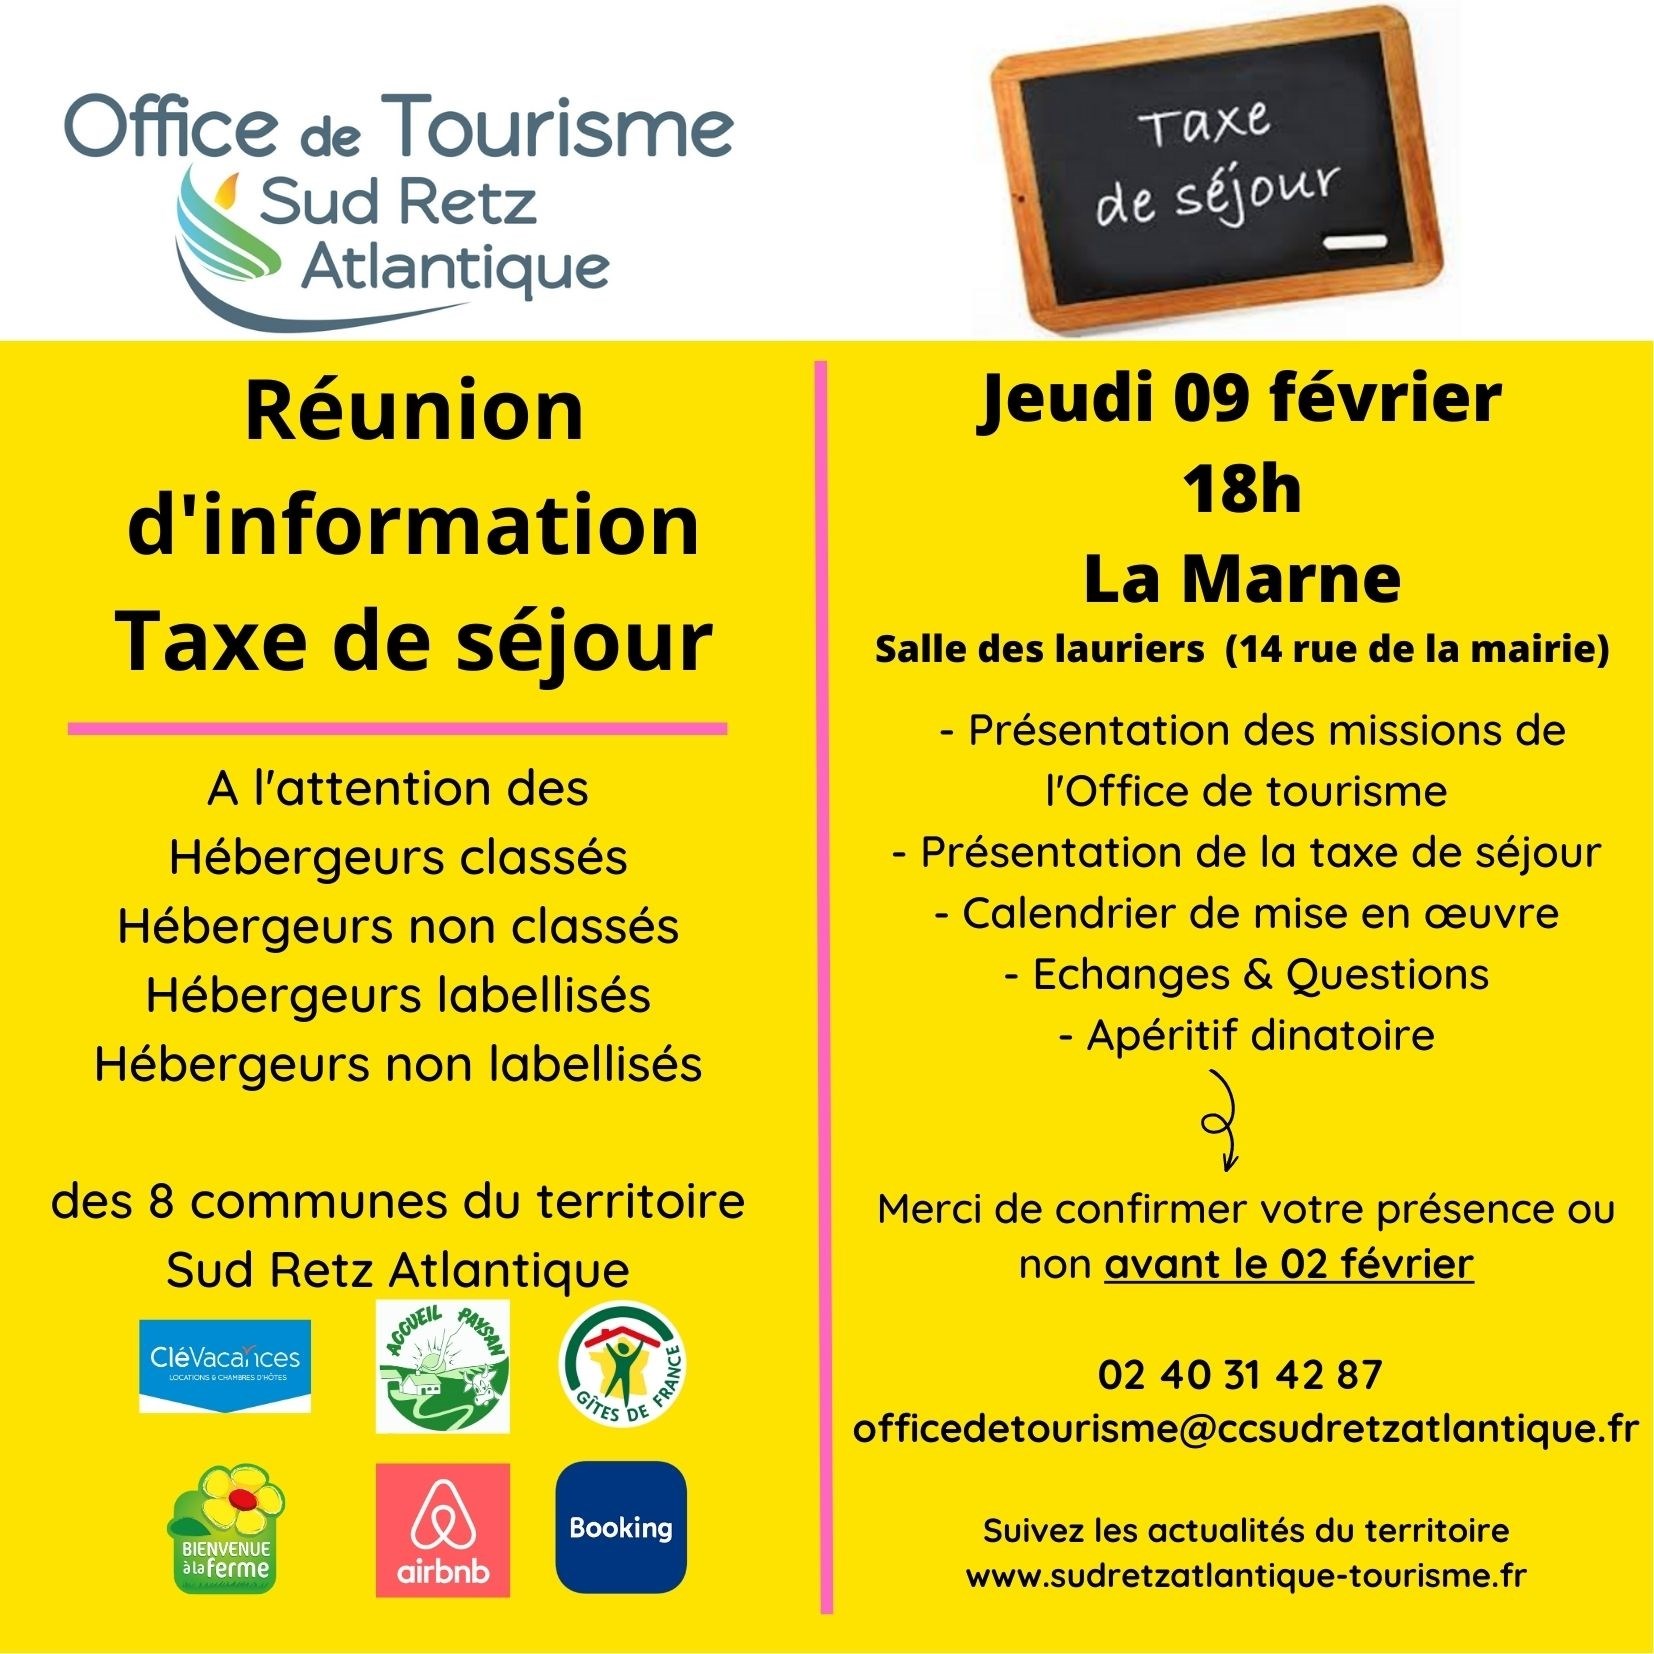 Réunion d'information Taxe de séjour © Office de tourisme Sud Retz Atlantique